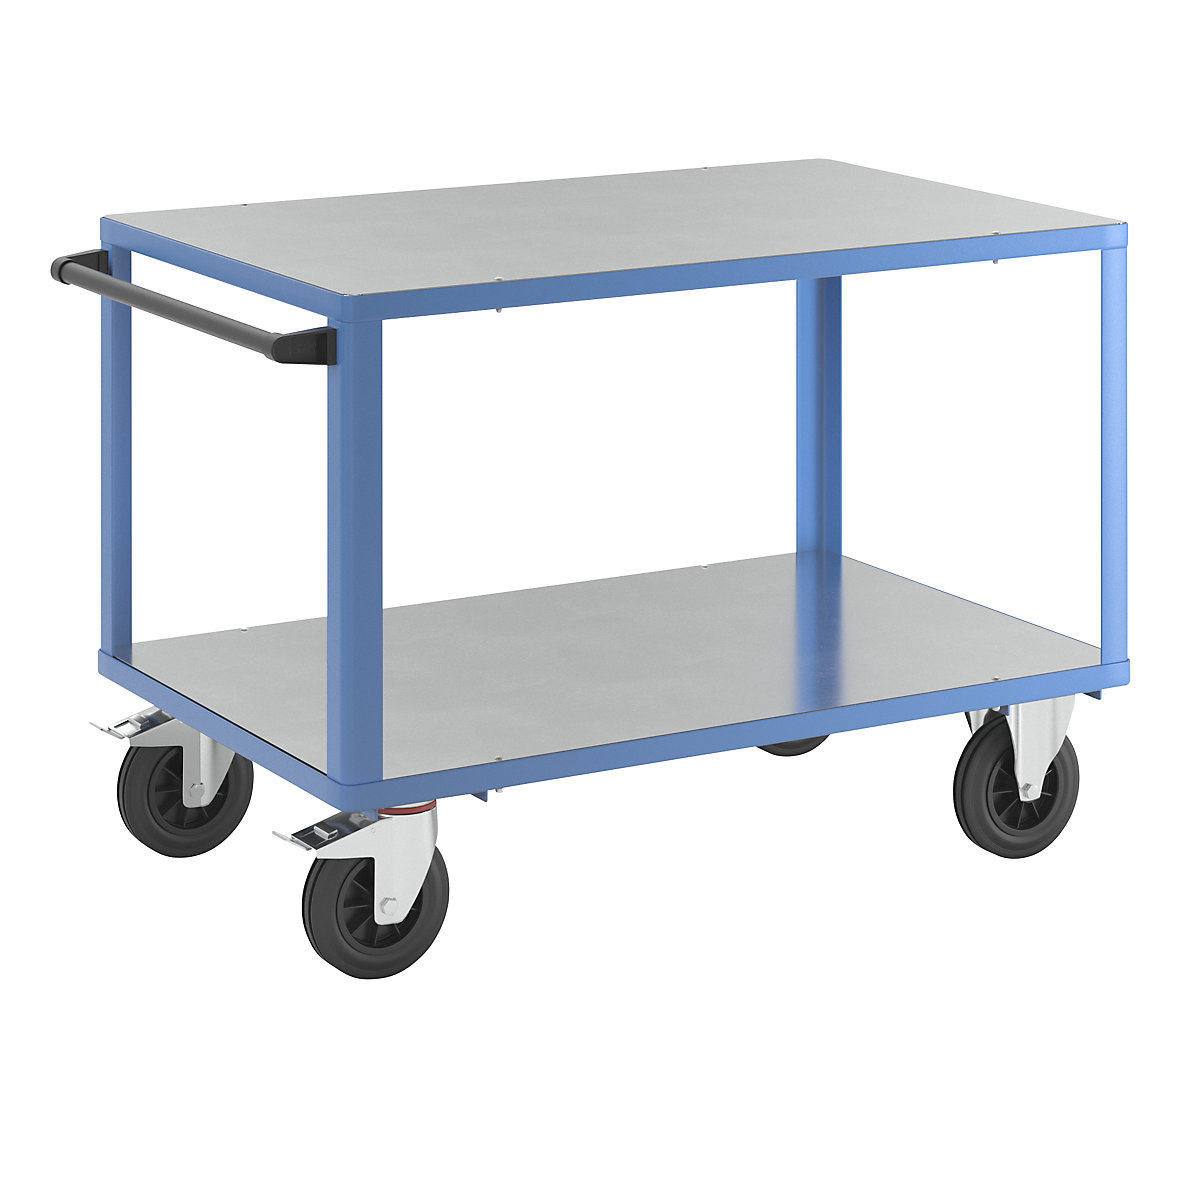 Montážní vozík – eurokraft pro, 2 ložné plochy s povrchy z pozinkovaného ocelového plechu, ložná plocha 1250 x 800 mm, podstavec světle modrý-1